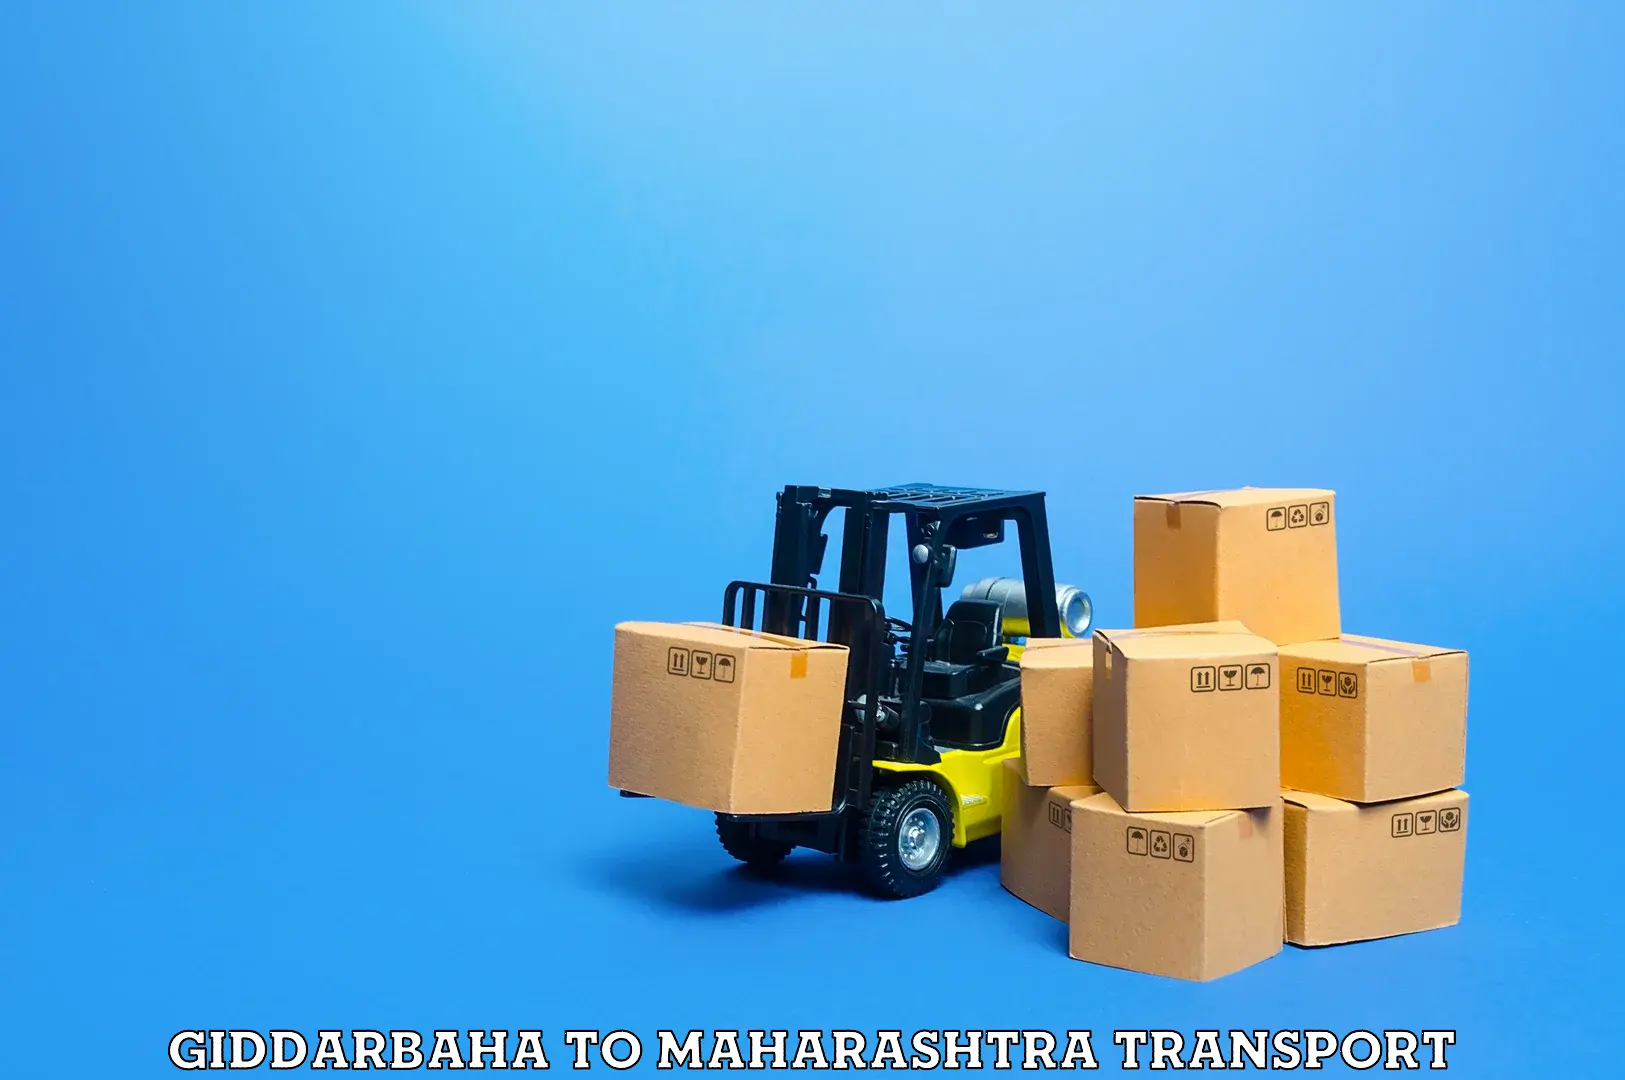 Cargo transportation services Giddarbaha to Karjat